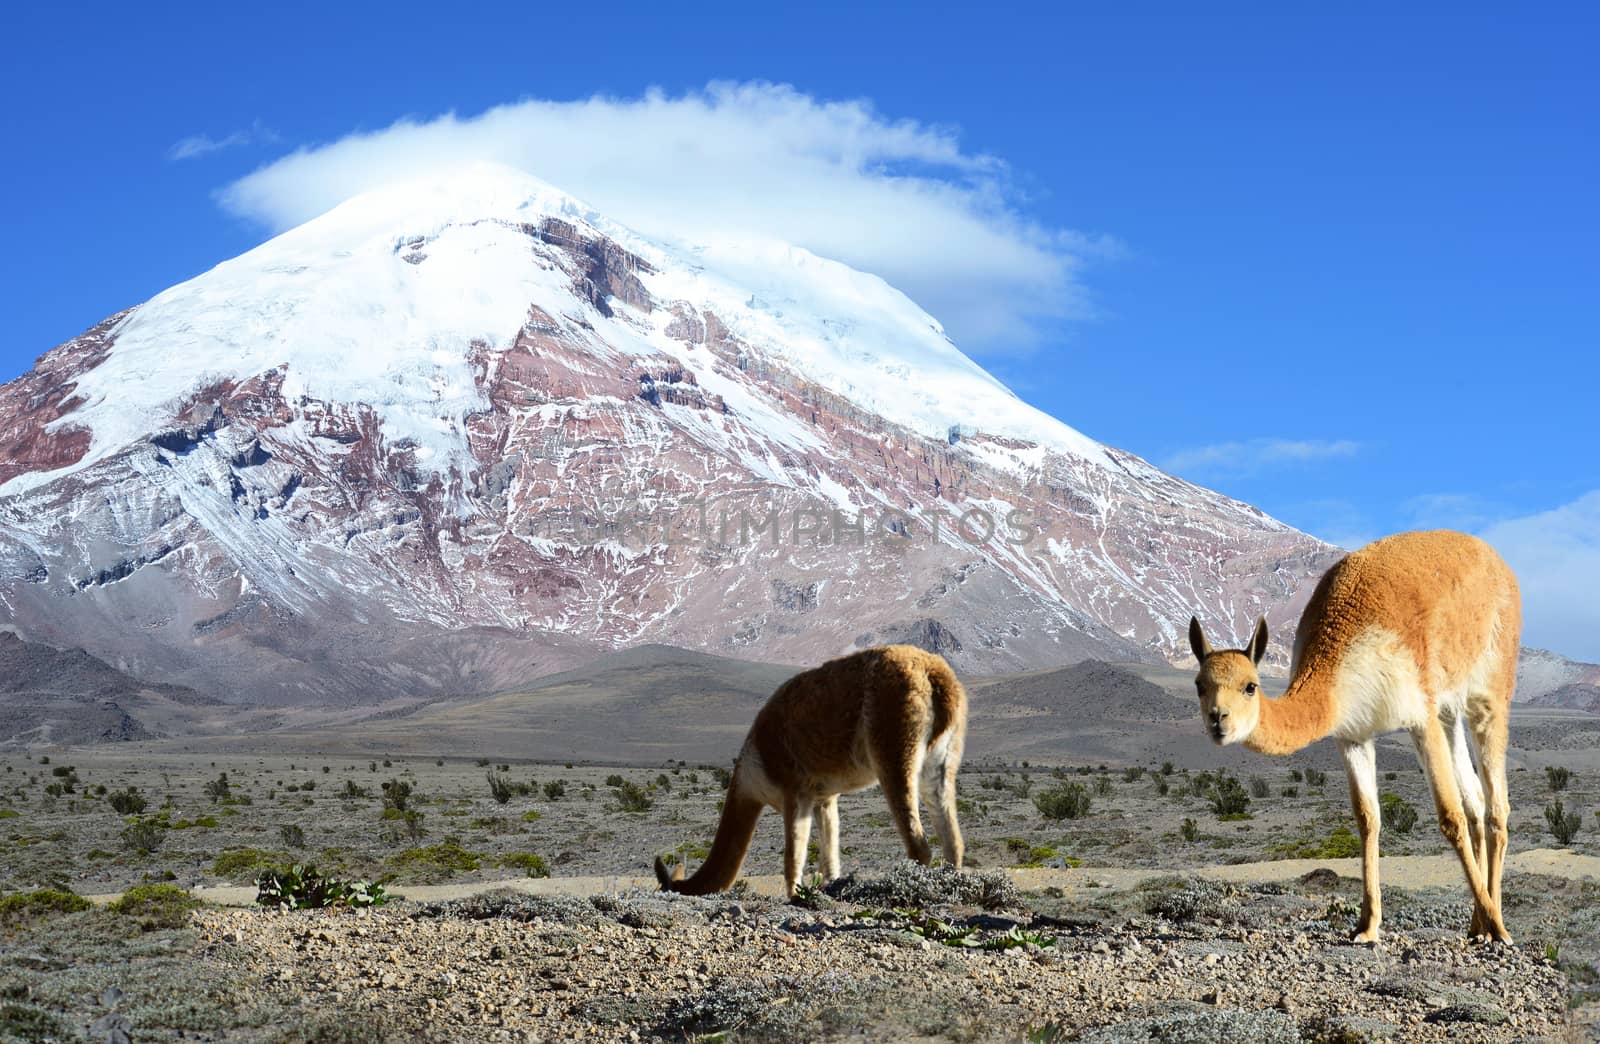 Vicugna. stratovolcano Chimborazo, Cordillera Occidental, Andes, by xura